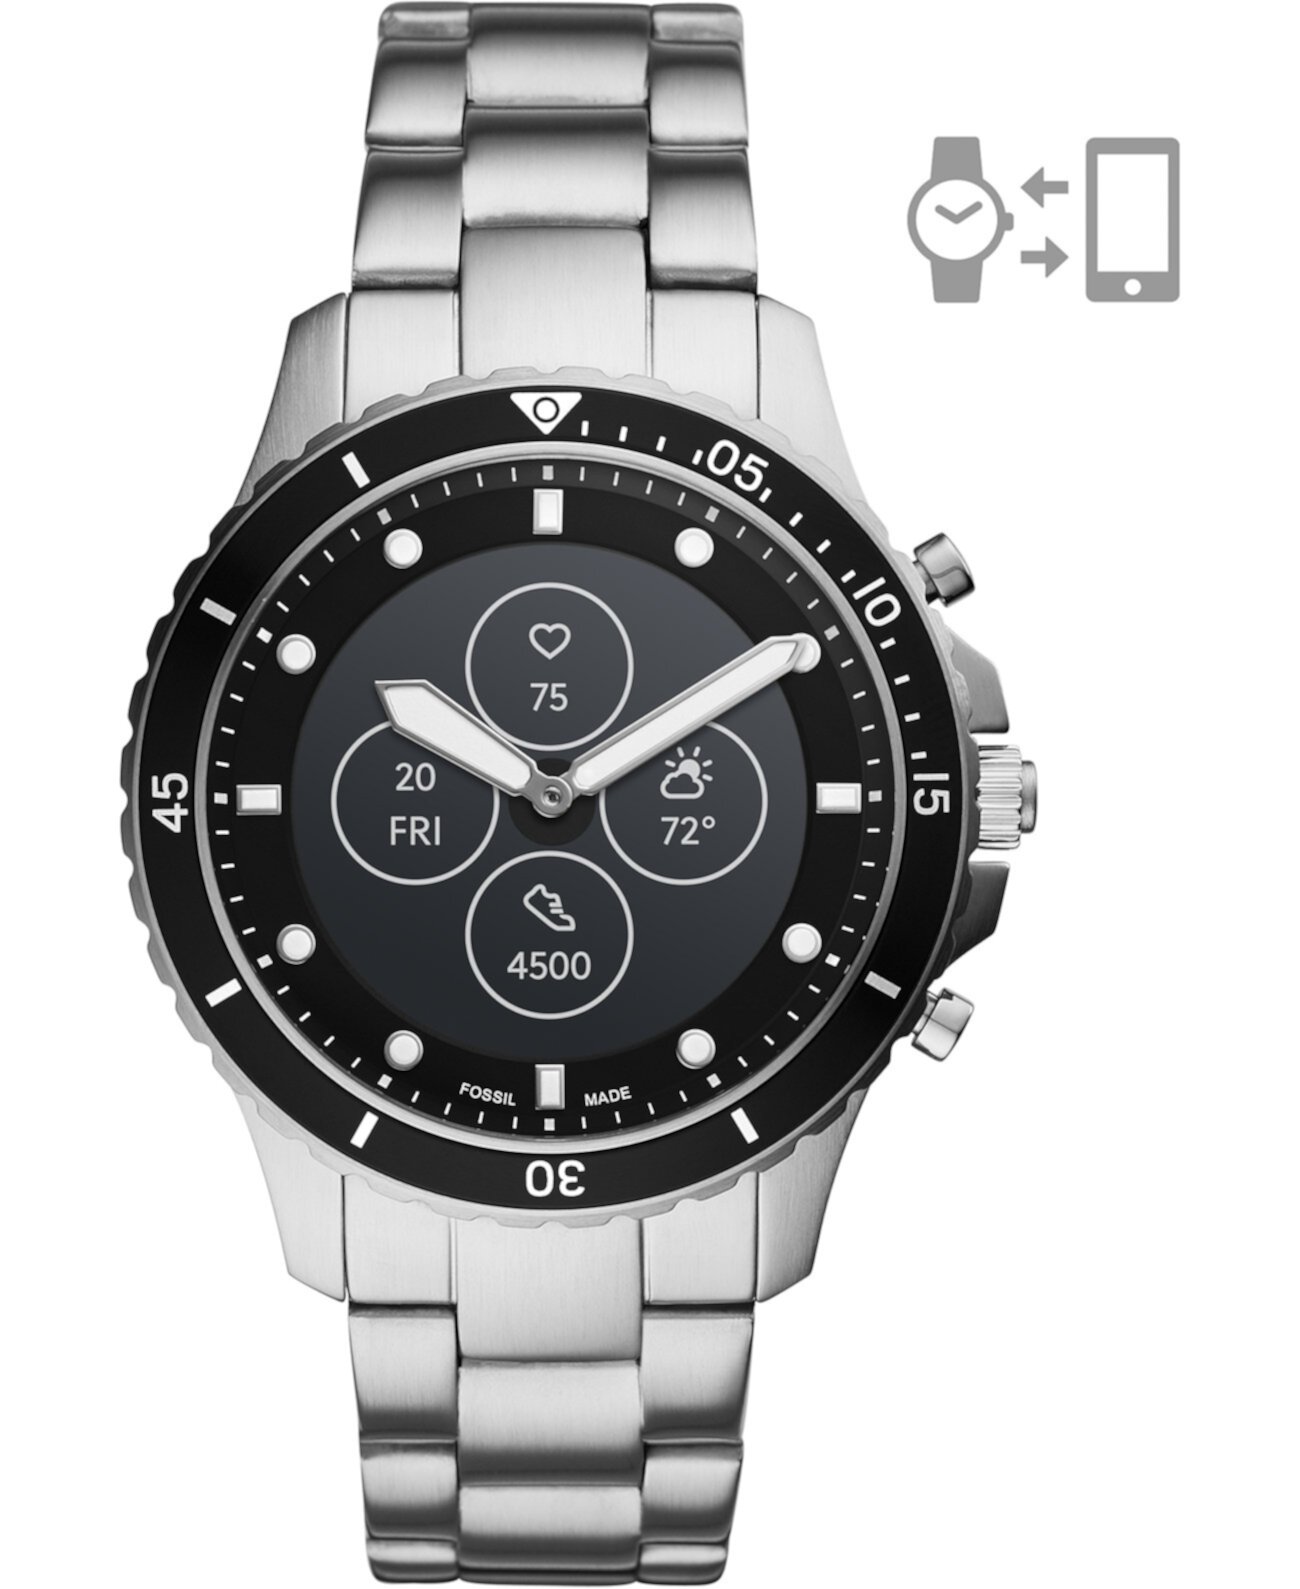 Мужские гибридные смарт-часы Tech FB-01 HR с браслетом из нержавеющей стали, 42 мм Fossil